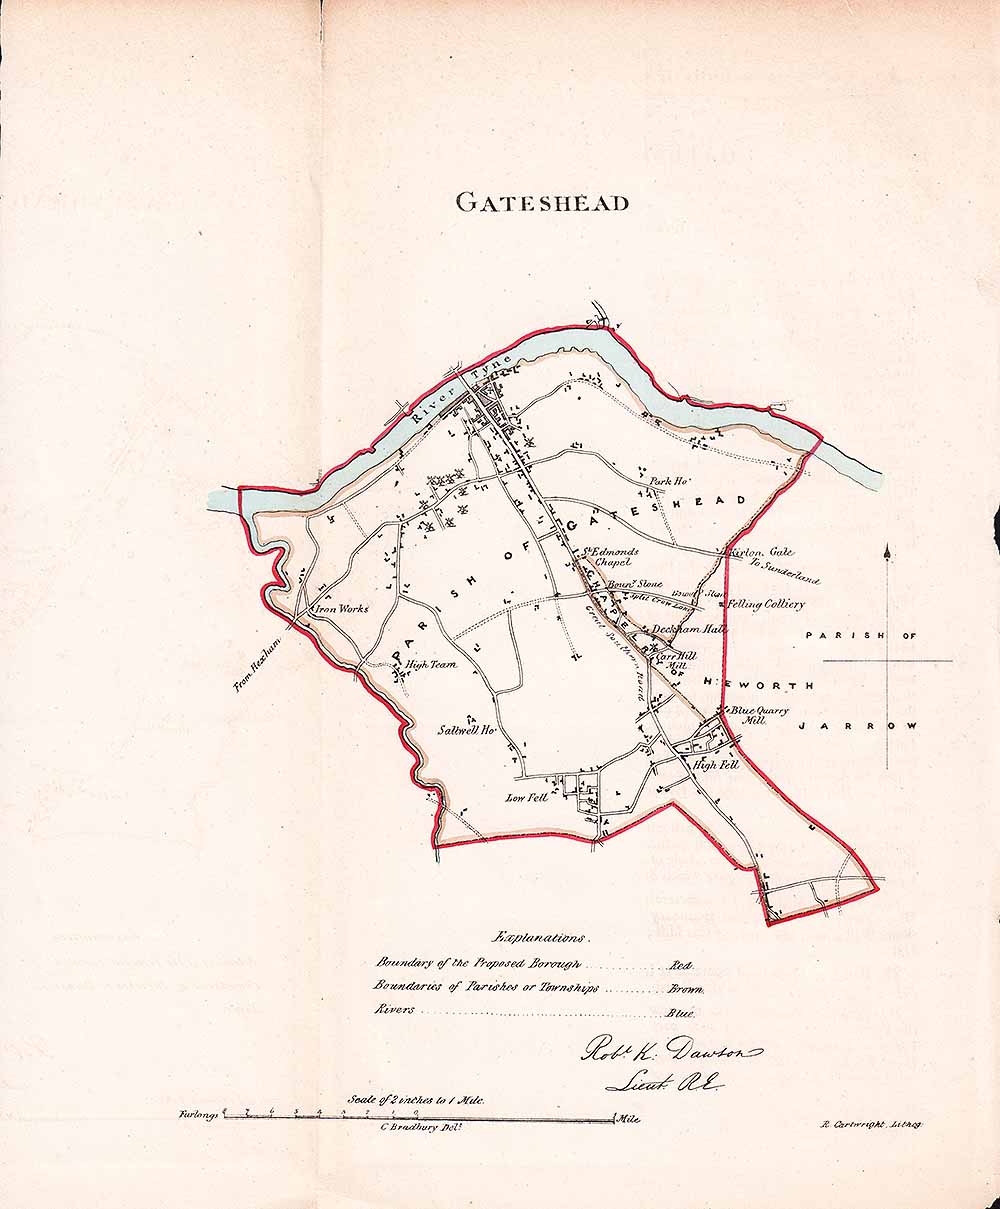 Gateshead Town Plan - RK Dawson 